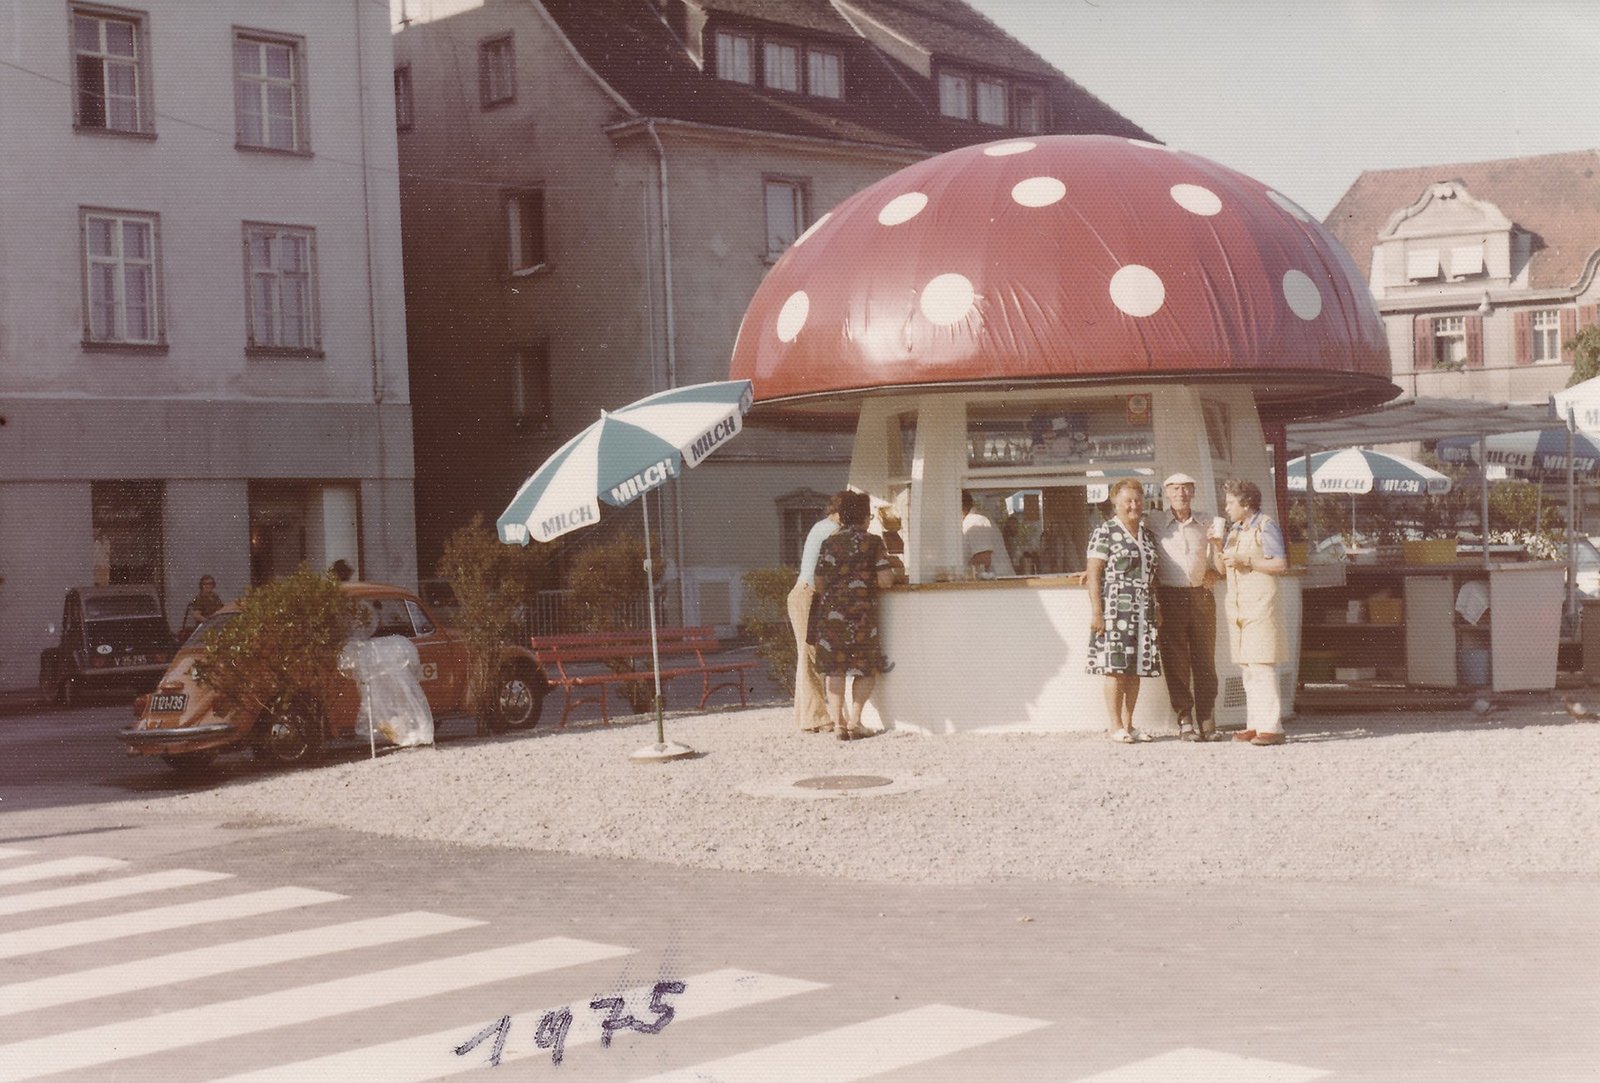 Milchpilz, ein Shop in Fliegenpilzform 1975